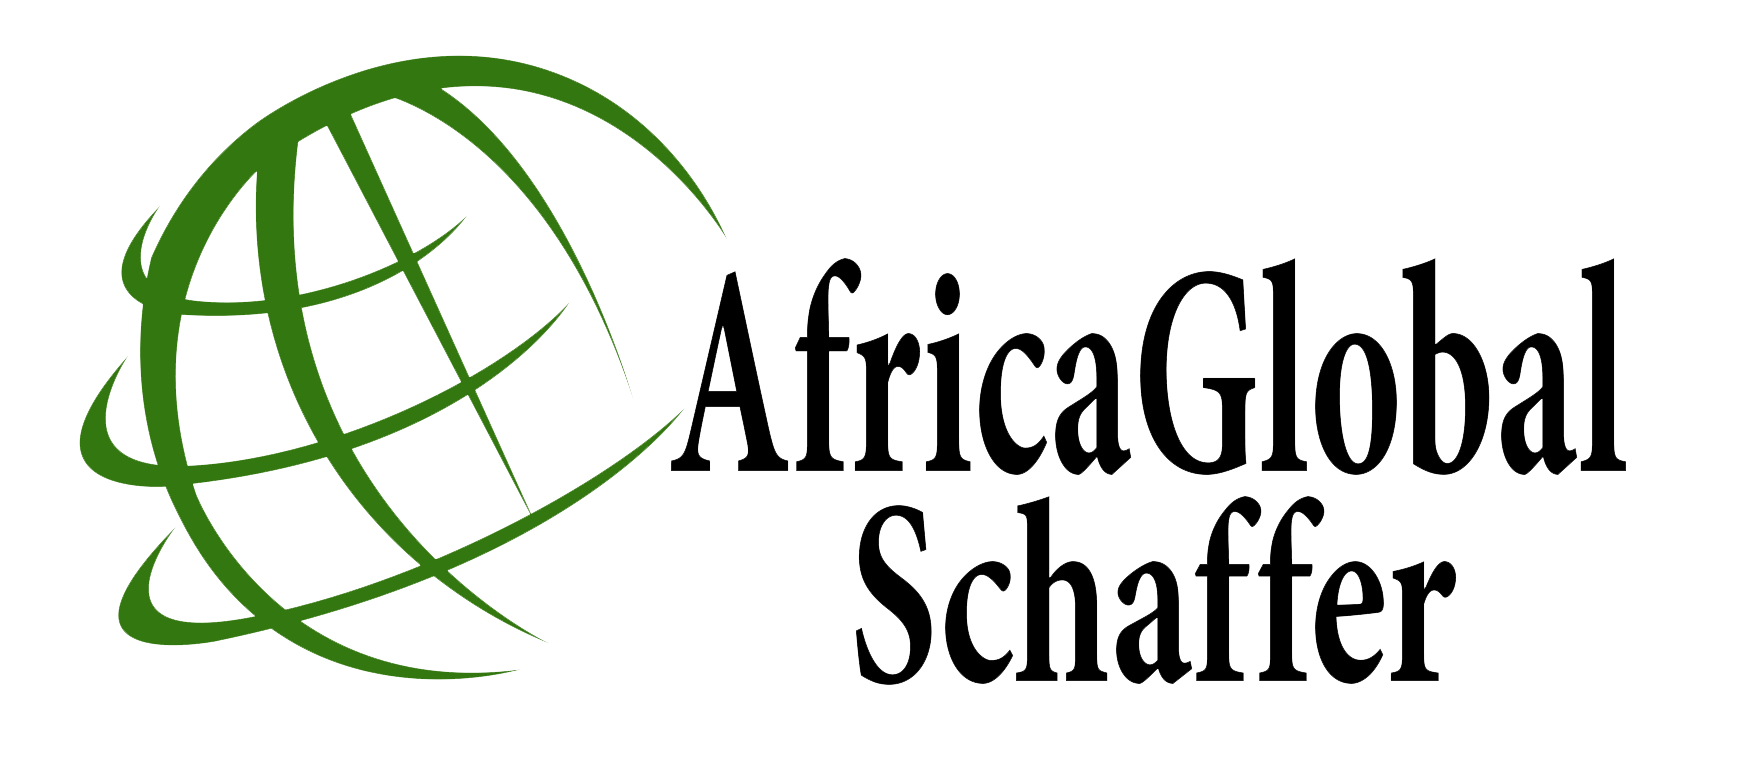 Africa Global Logo - Africa Global